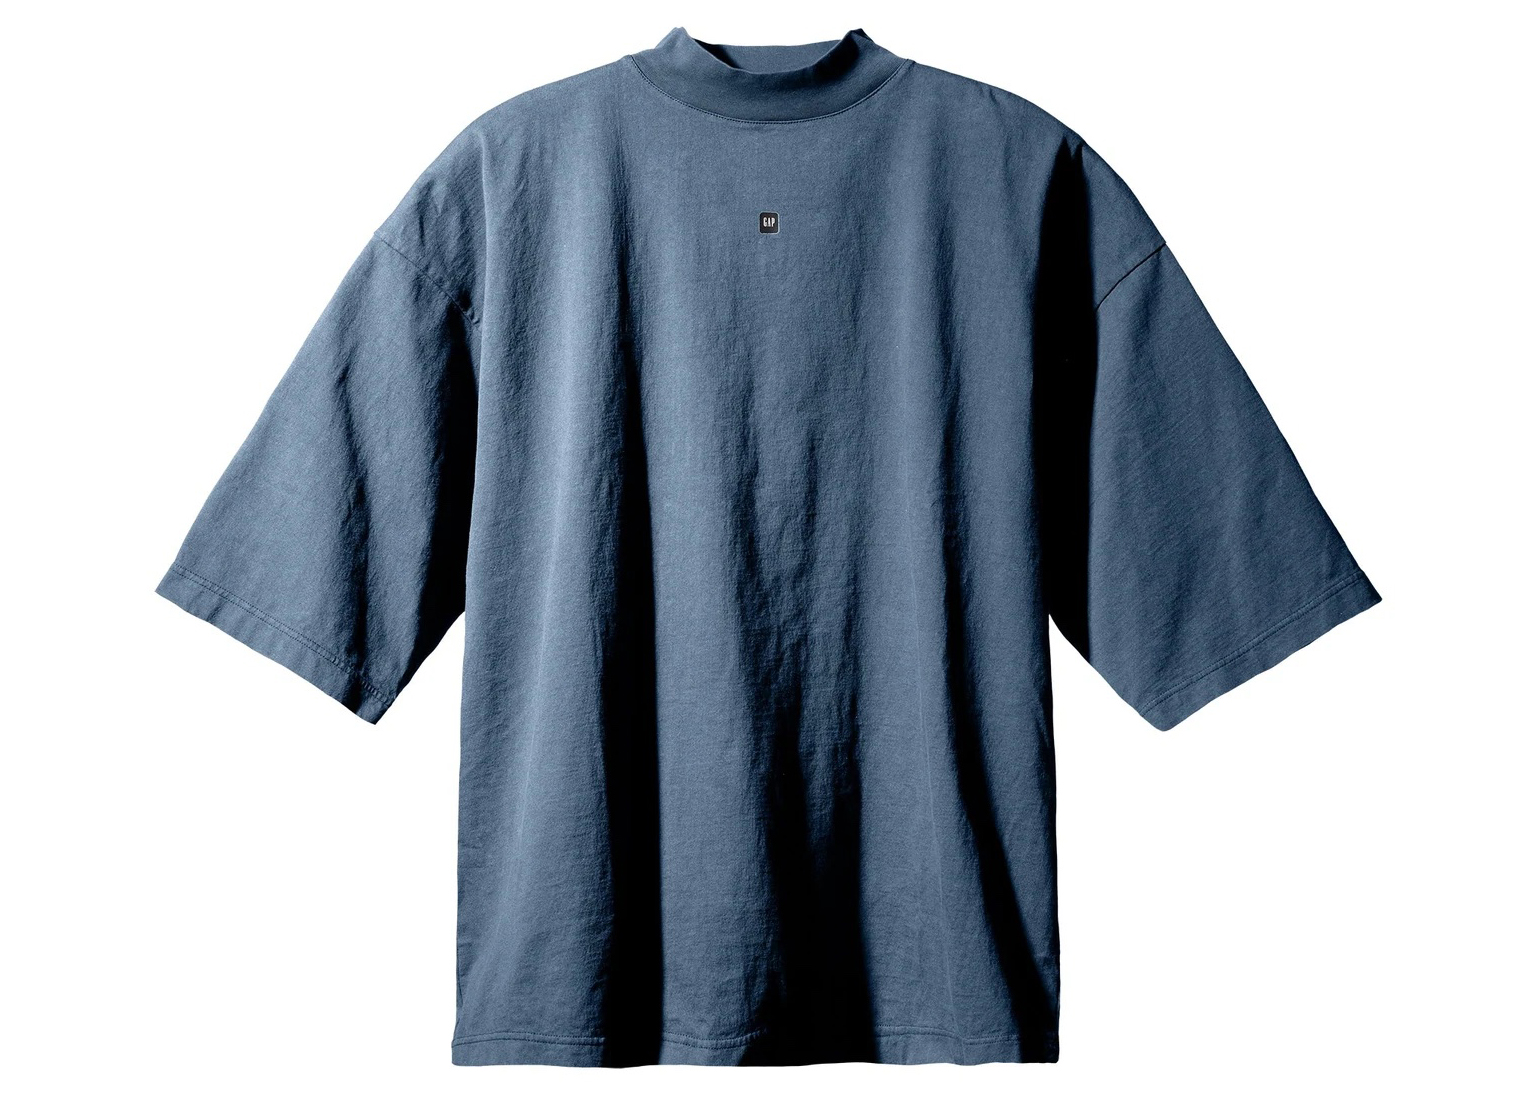 Yeezy Gap Engineered by Balenciaga Logo 3/4 Sleeve T-shirt Grey 